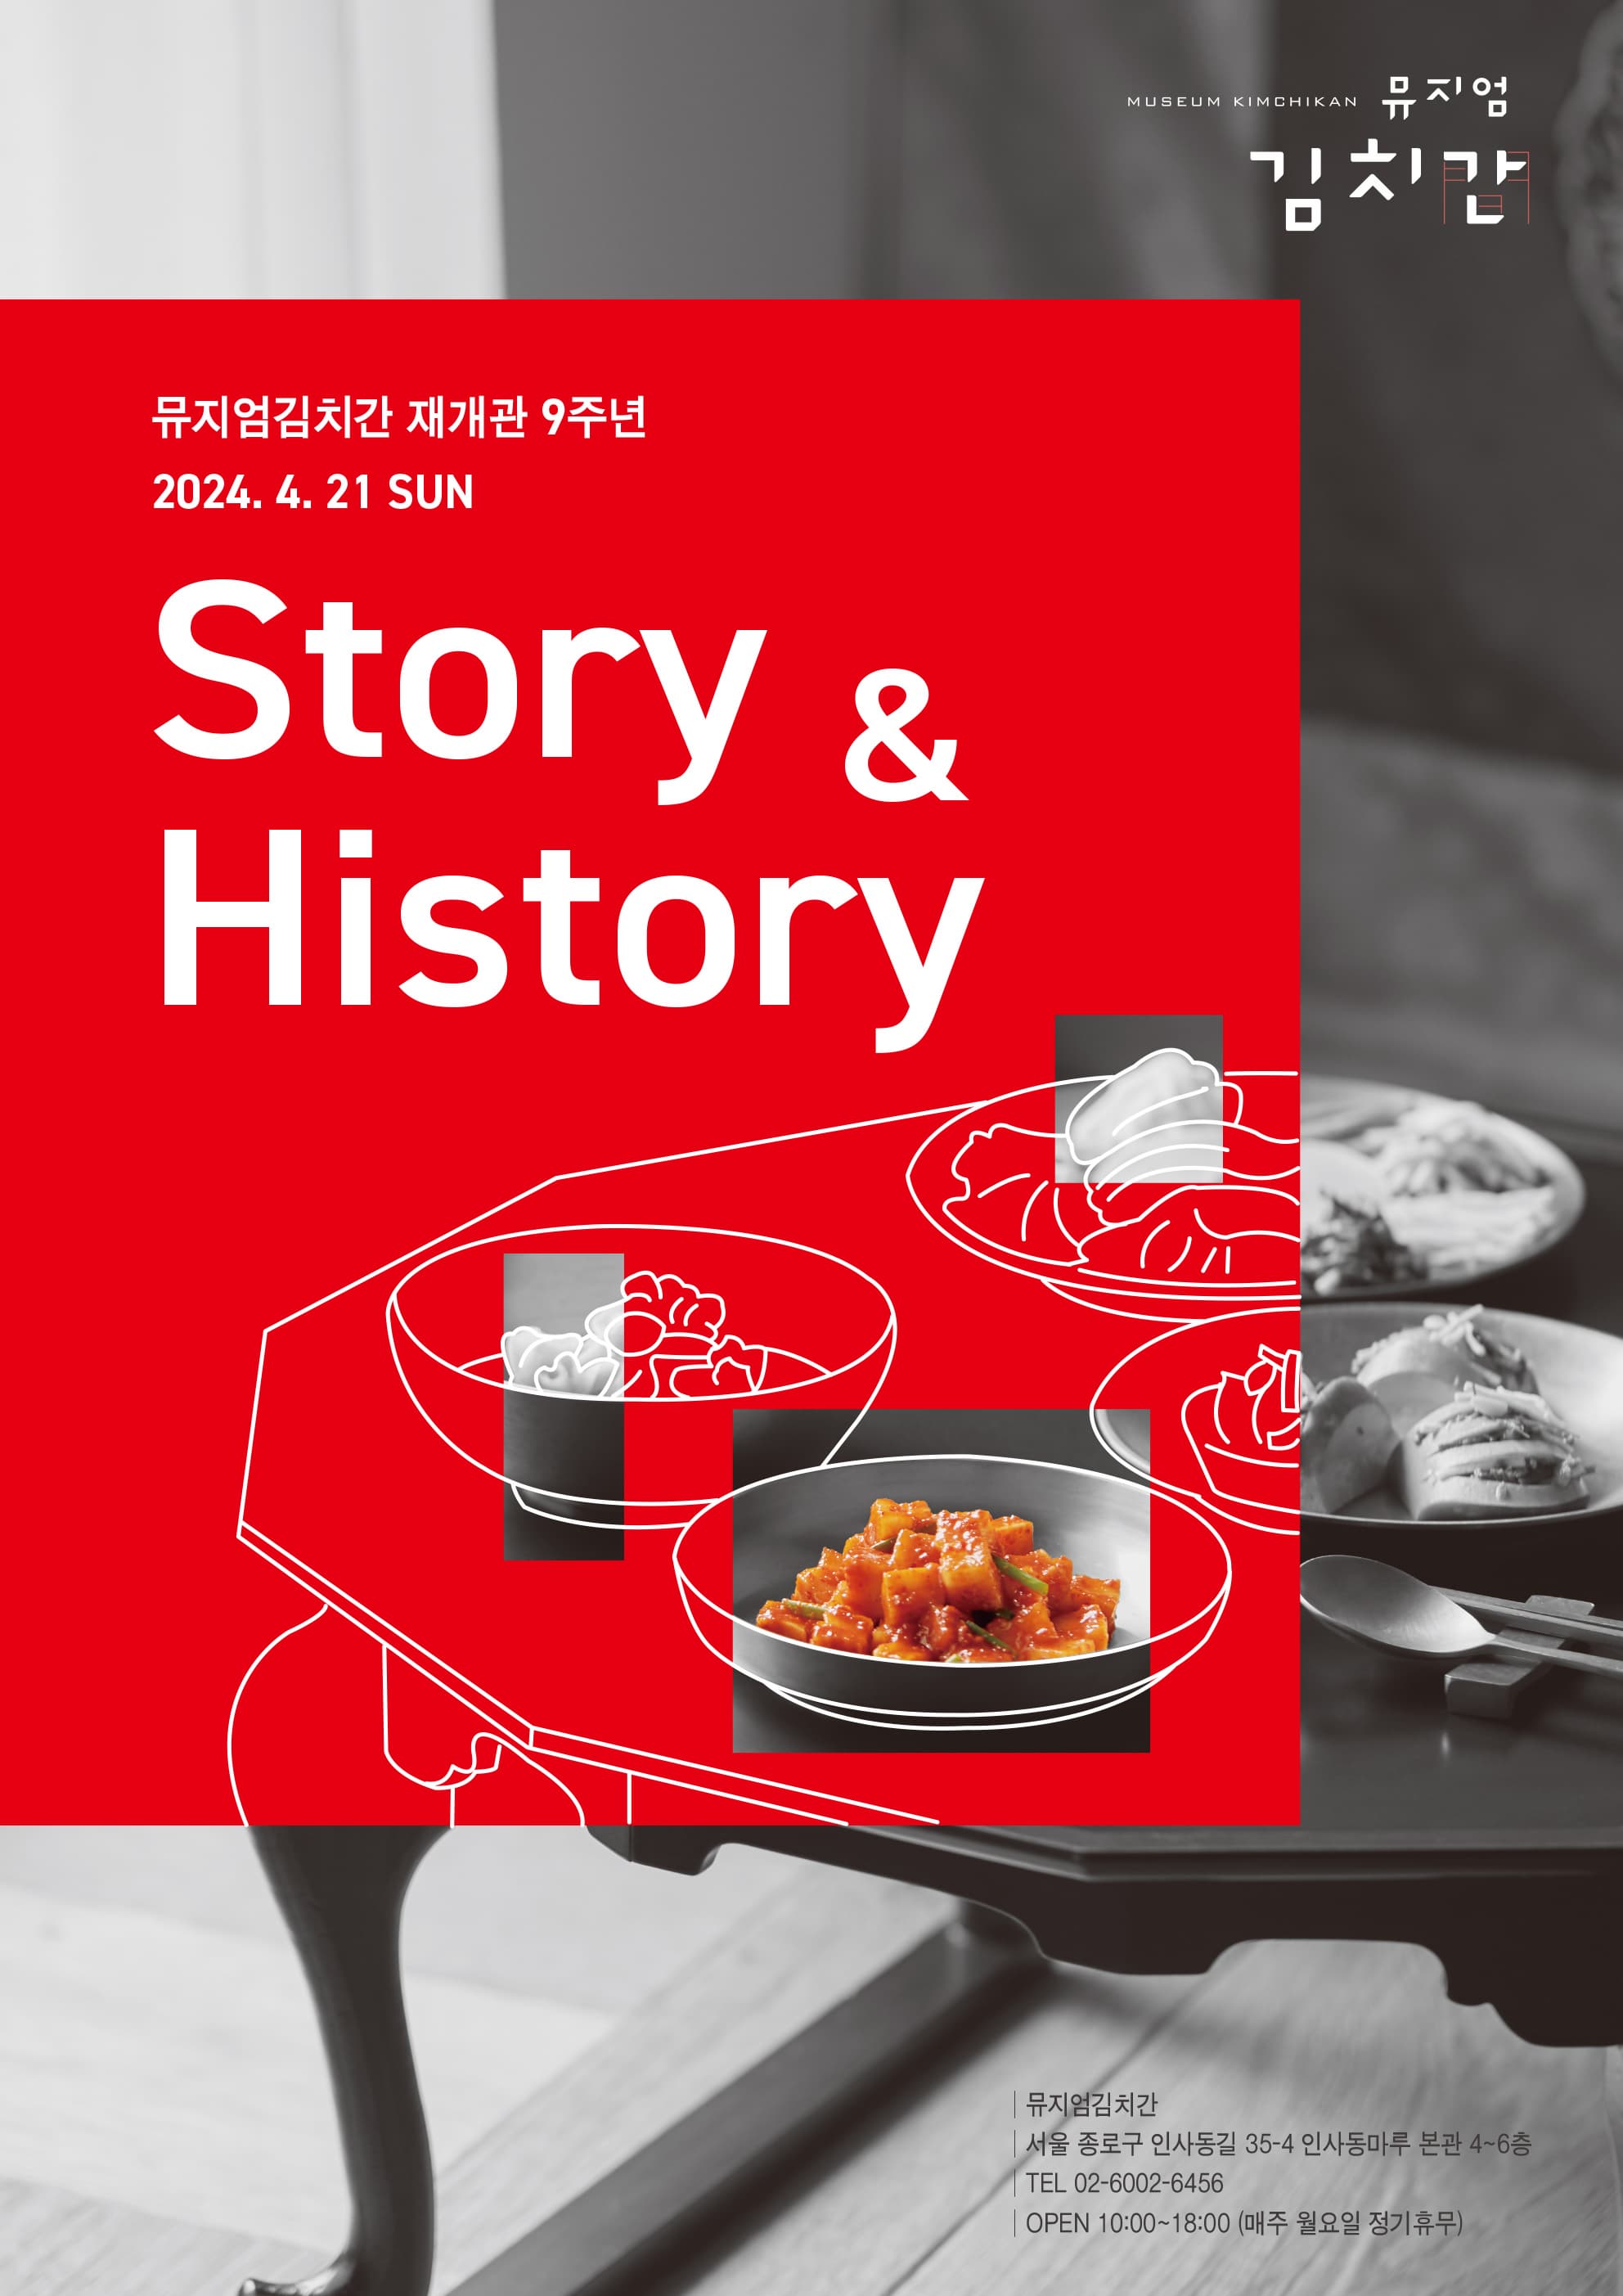 뮤지엄김치간 재개관 9주년 기념 행사 ‘뮤지엄김치간 Story & History’